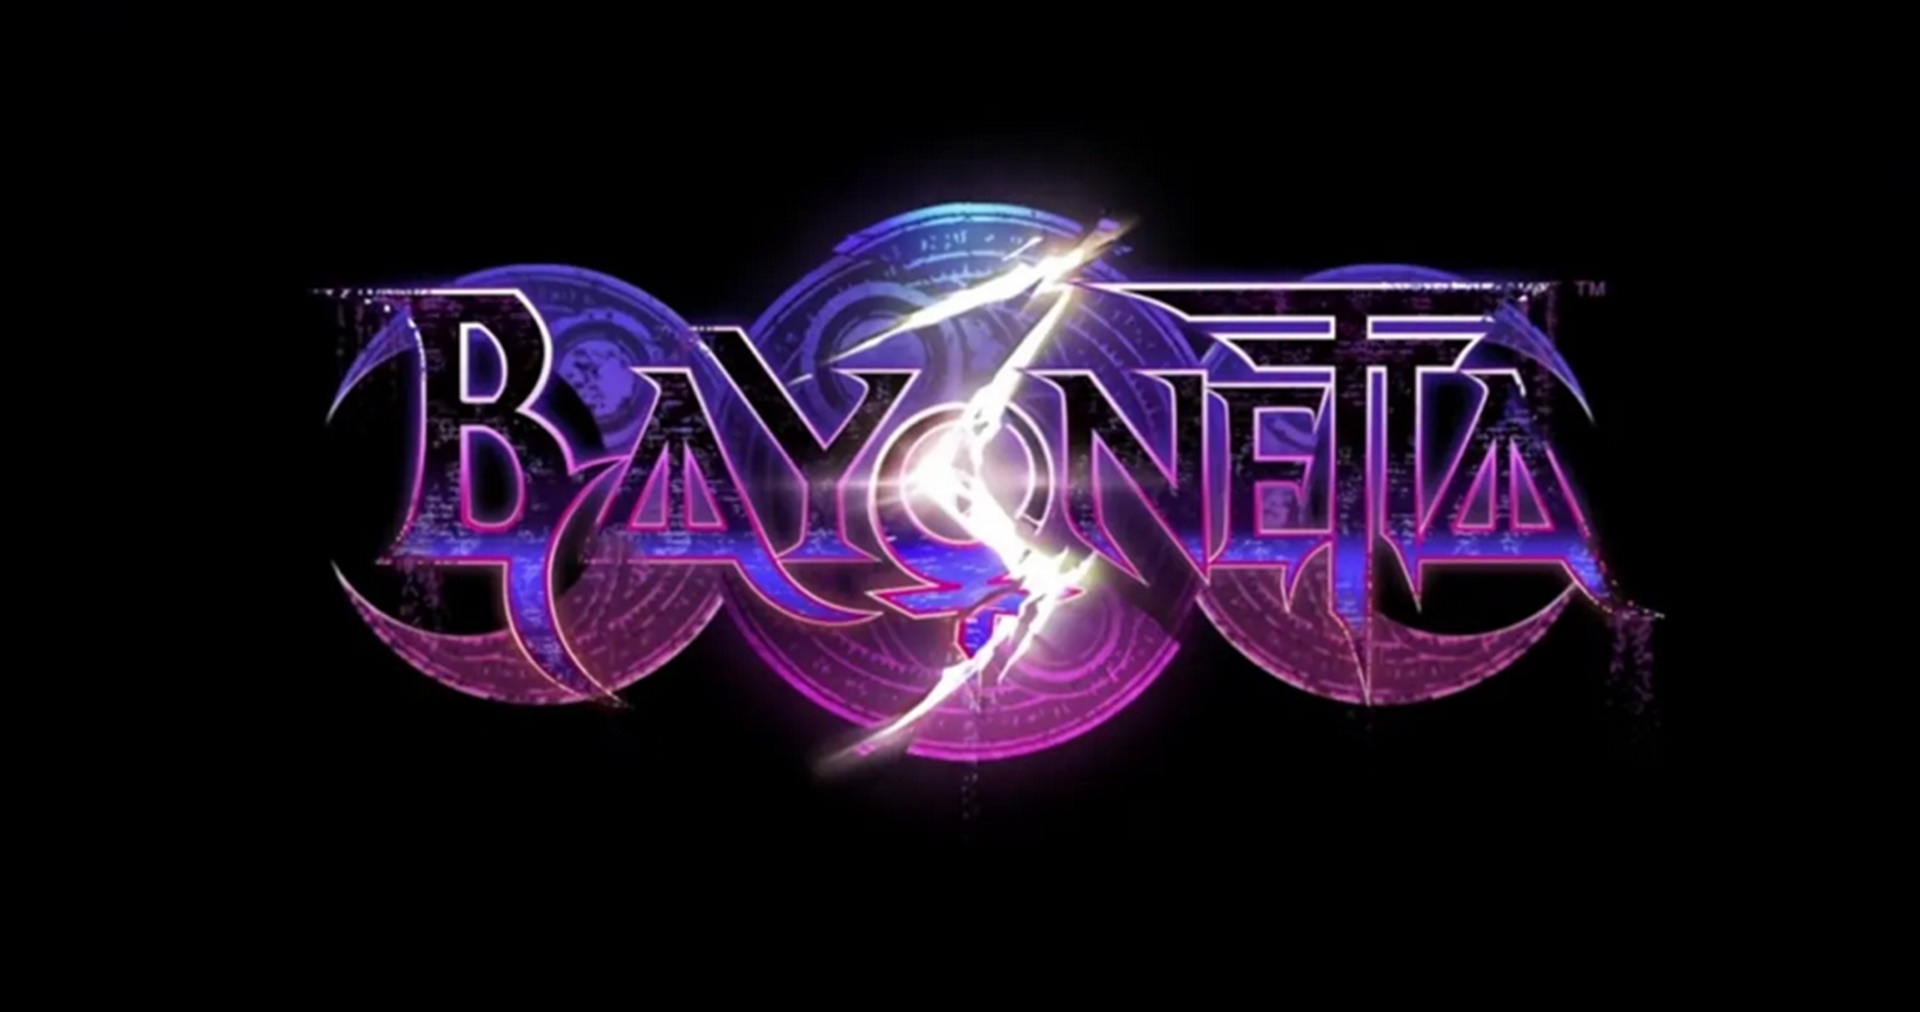 ผู้สร้างบอกไม่ต้องเล่น 2 ภาคแรก ก็สามารถสนุกไปกับ Bayonetta 3 ได้